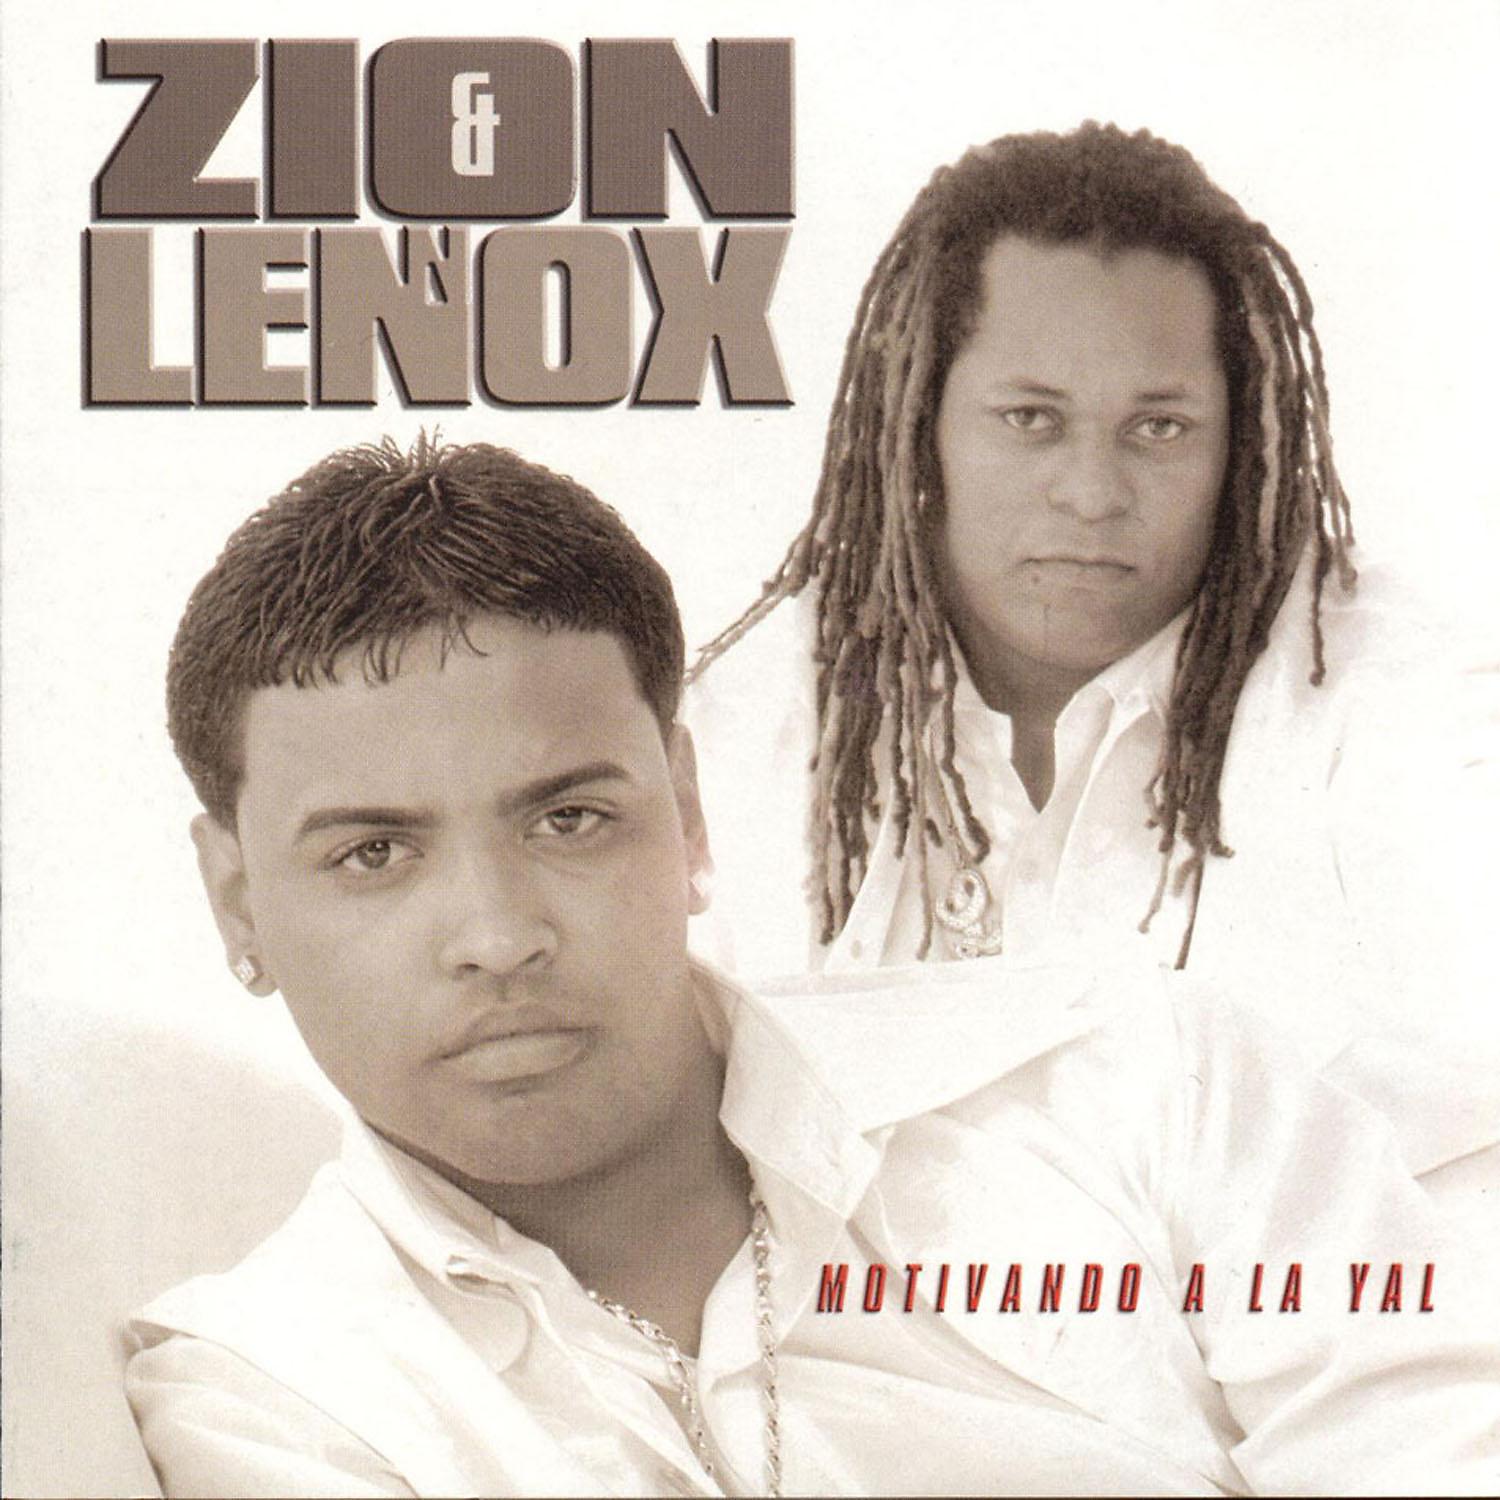 Yo voy daddy. Zion & Lennox. Zion y Lennox, Daddy Yankee. Motivando a la Yal Zion y Lennox. Daddy Yankee album Cover.